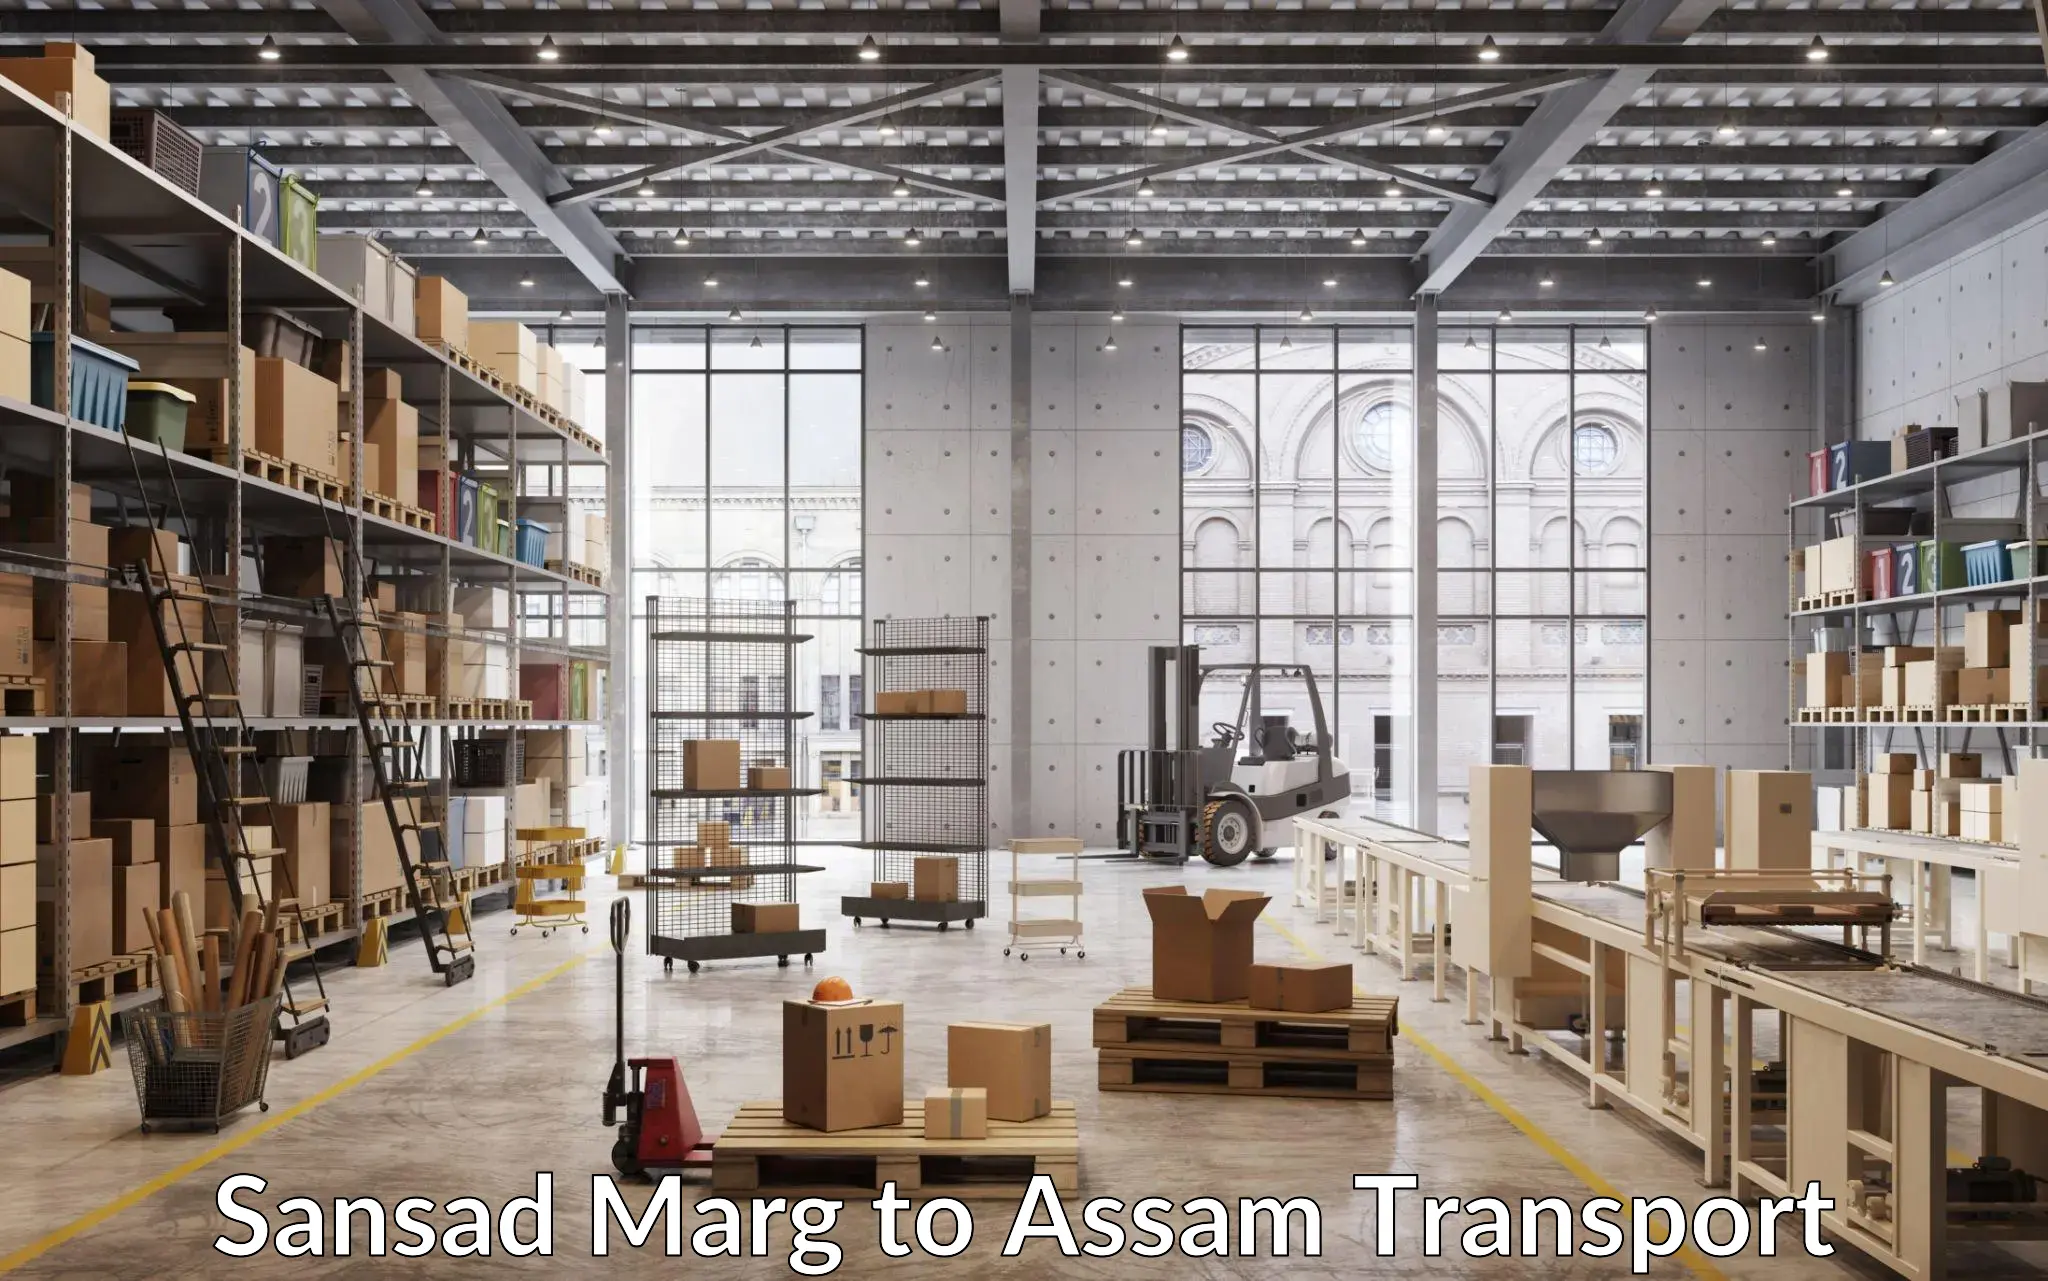 Commercial transport service Sansad Marg to Lala Assam